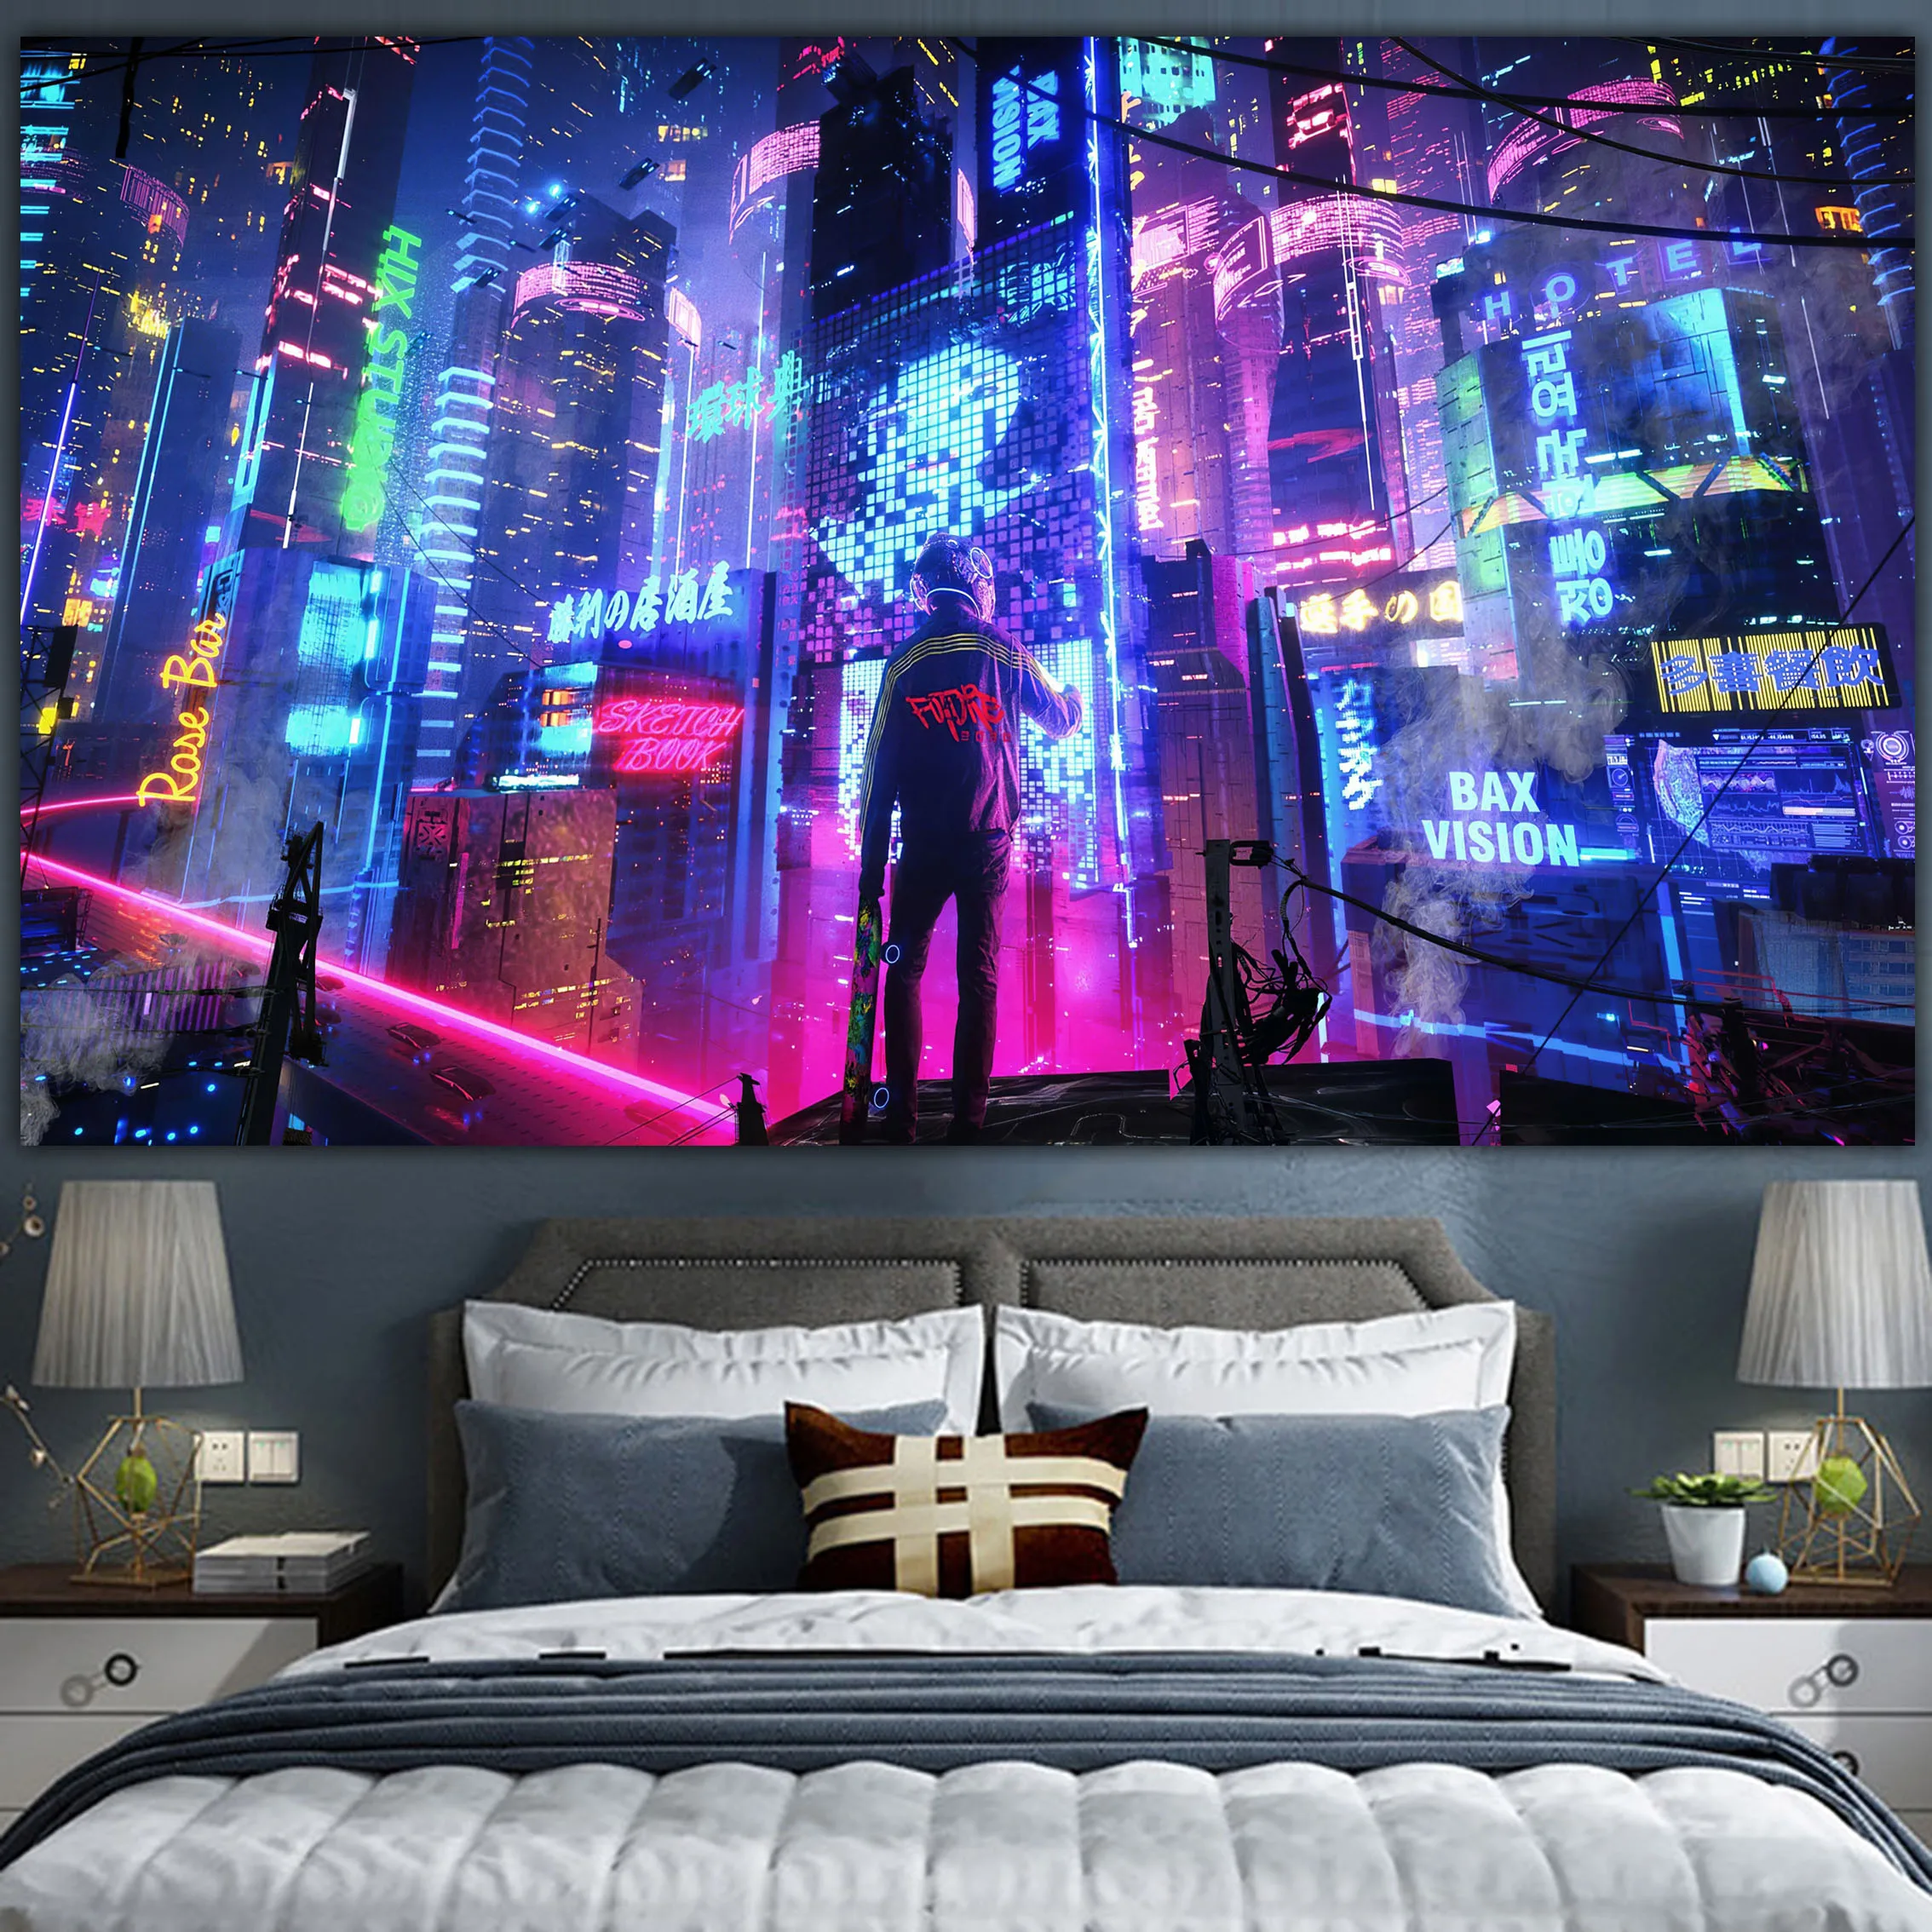 

Настенный гобелен в стиле киберпанк, тканевый постер с декором для создания атмосферы фильма, для гостиной, спальни, общежития, прикроватный столик